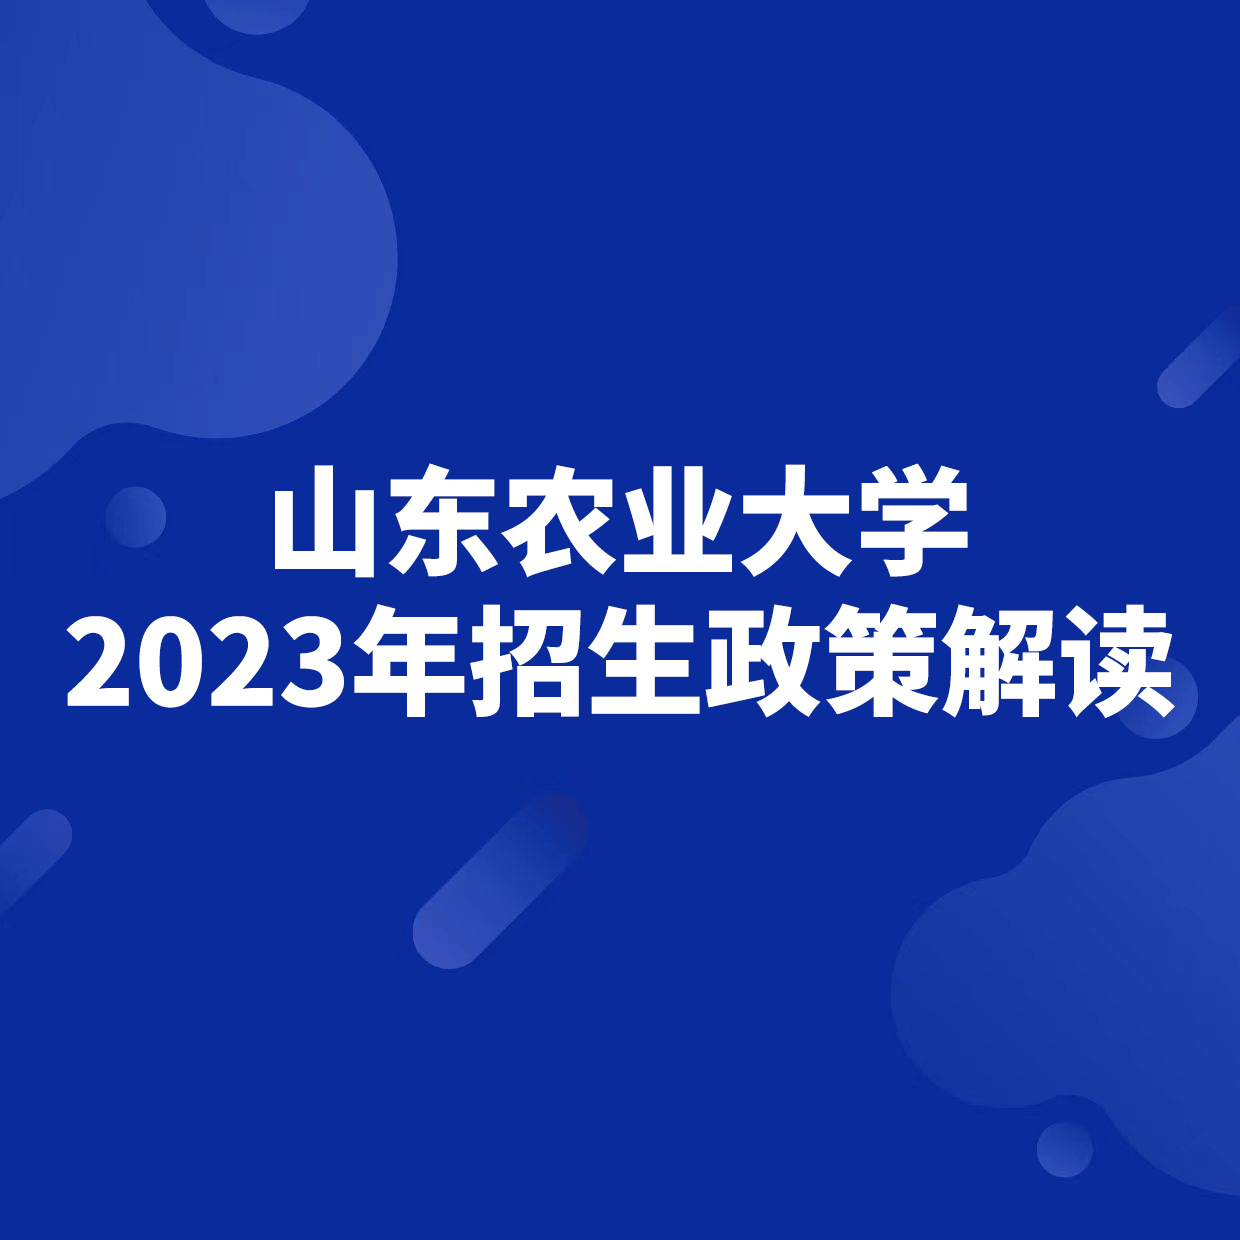 山东农业大学2023年招生政策解读